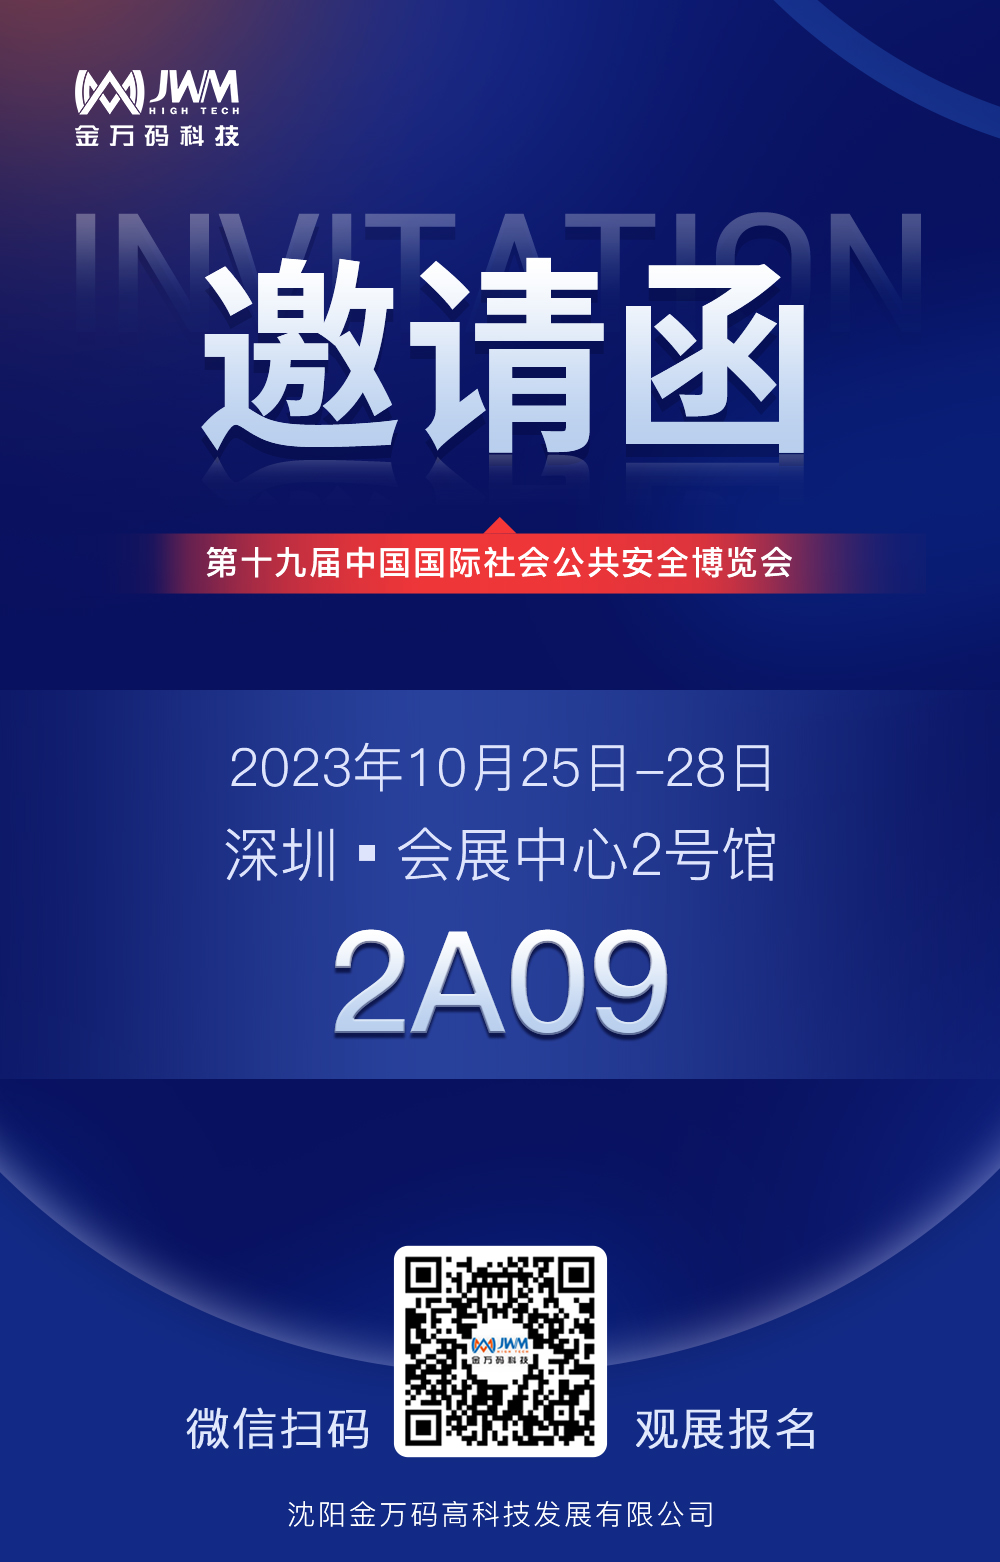 深圳展会2023公众号封面2.jpg